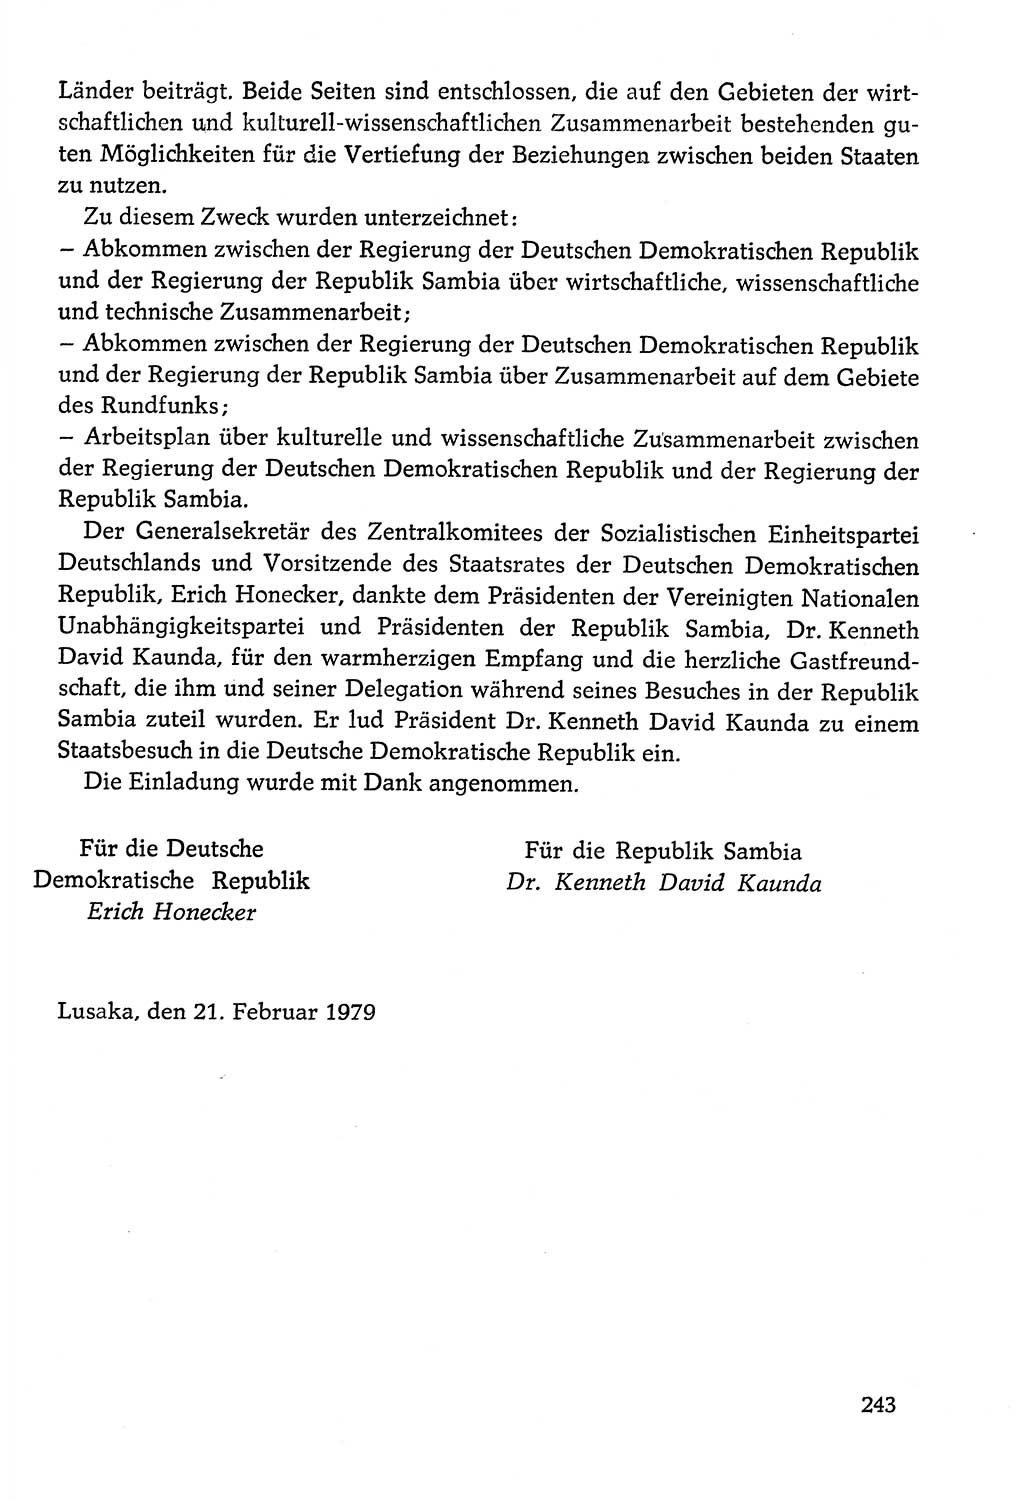 Dokumente der Sozialistischen Einheitspartei Deutschlands (SED) [Deutsche Demokratische Republik (DDR)] 1978-1979, Seite 243 (Dok. SED DDR 1978-1979, S. 243)